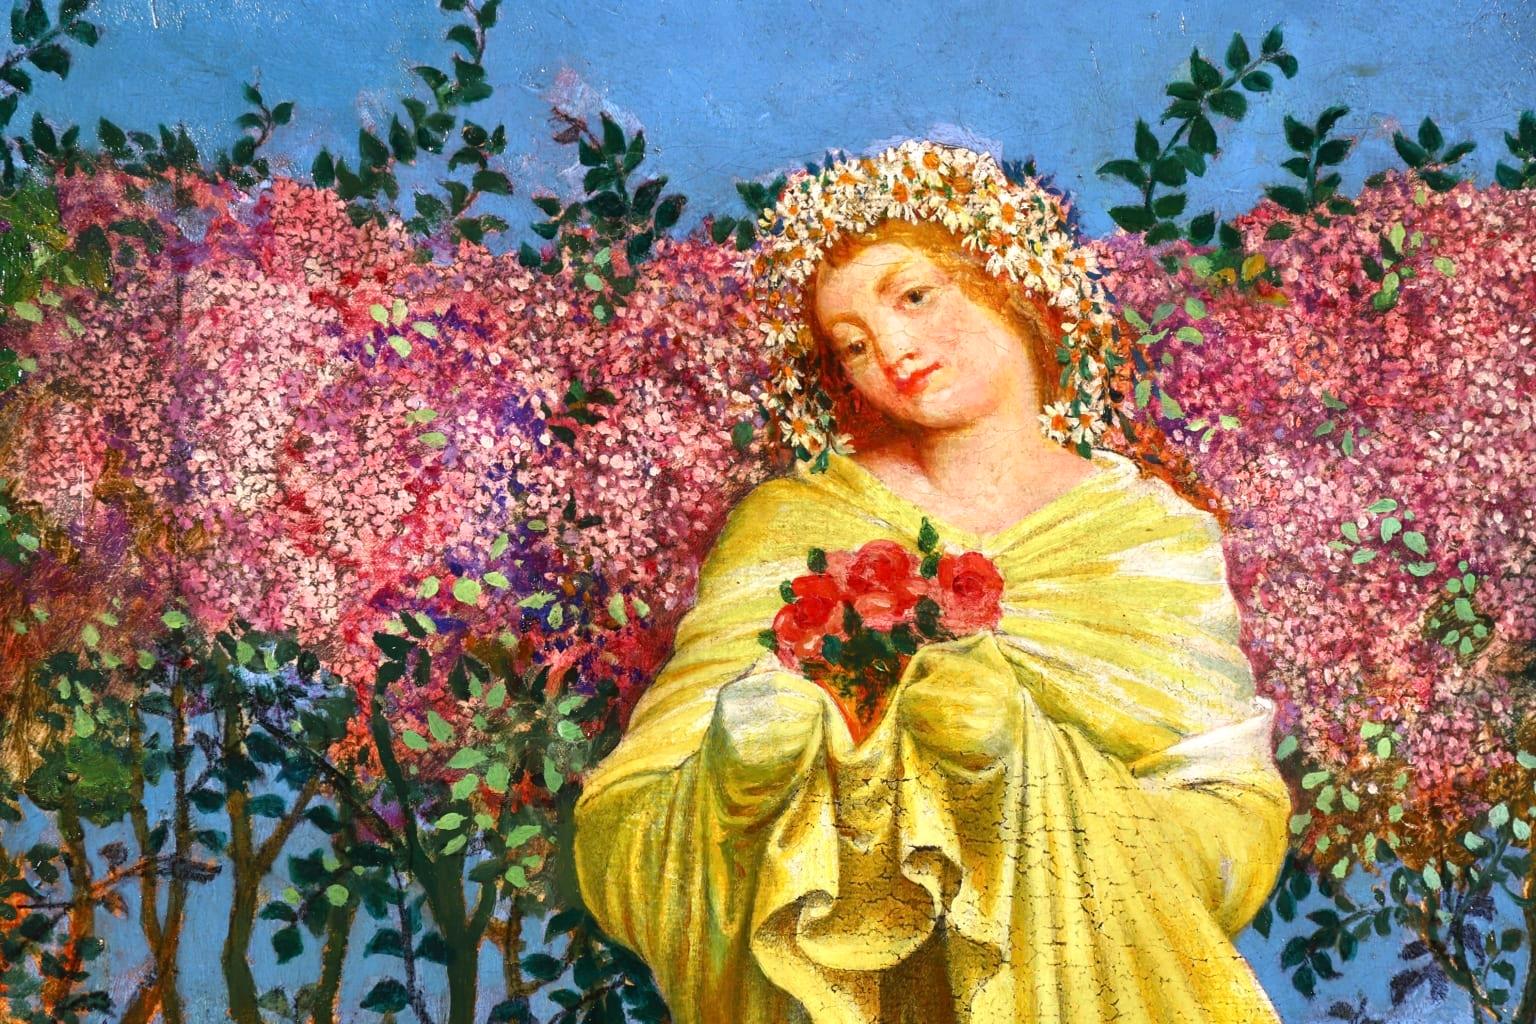 Picking Flowers - Symbolist Oil, Portrait of Woman in Landscape - Valere-Bernard 1